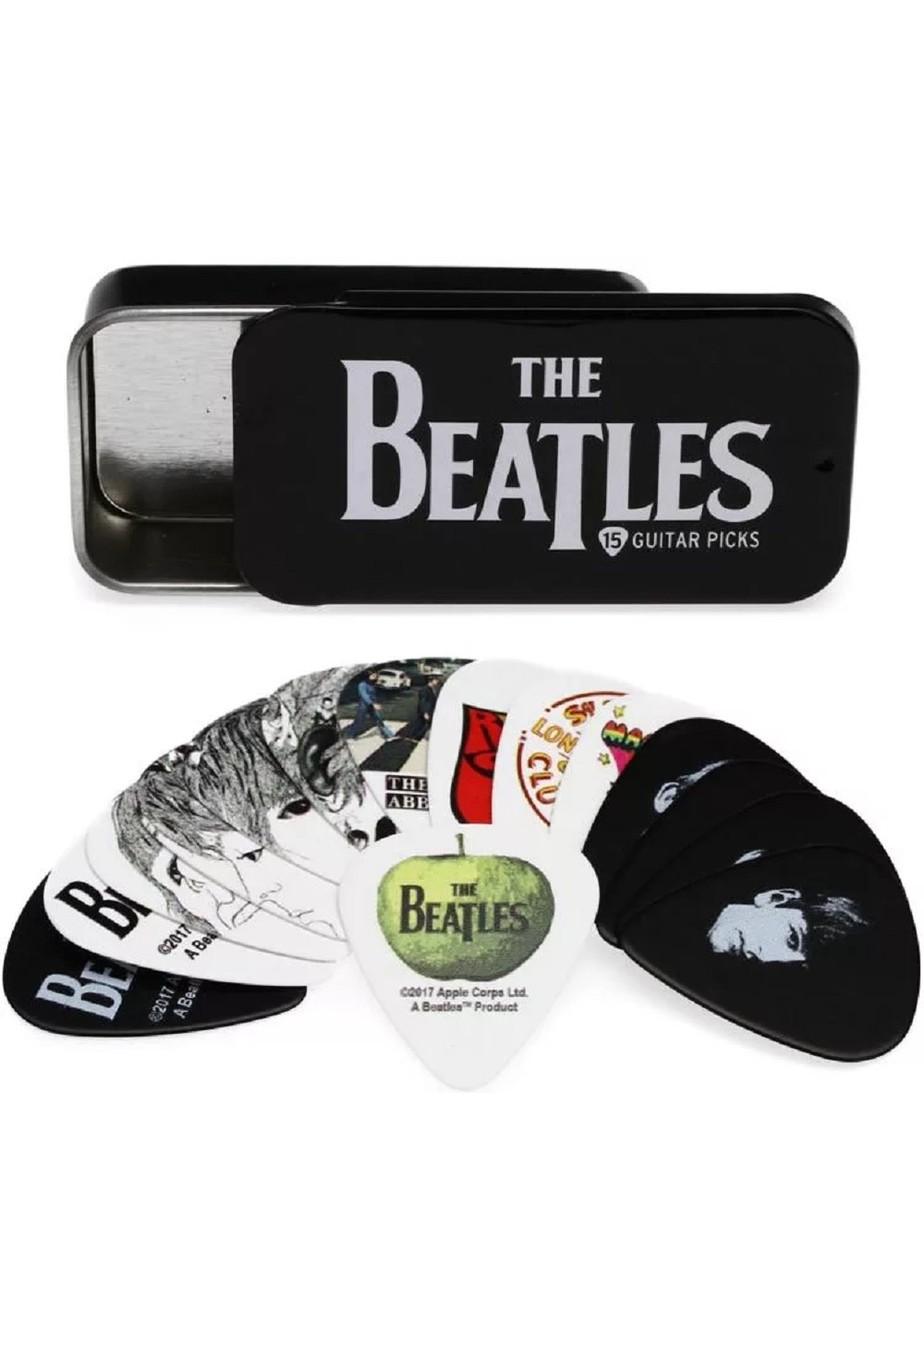 D Addario D Addario Beatles Signature Guitar Pick Tins Logo 15 Picks John Mann S Guitar Vault